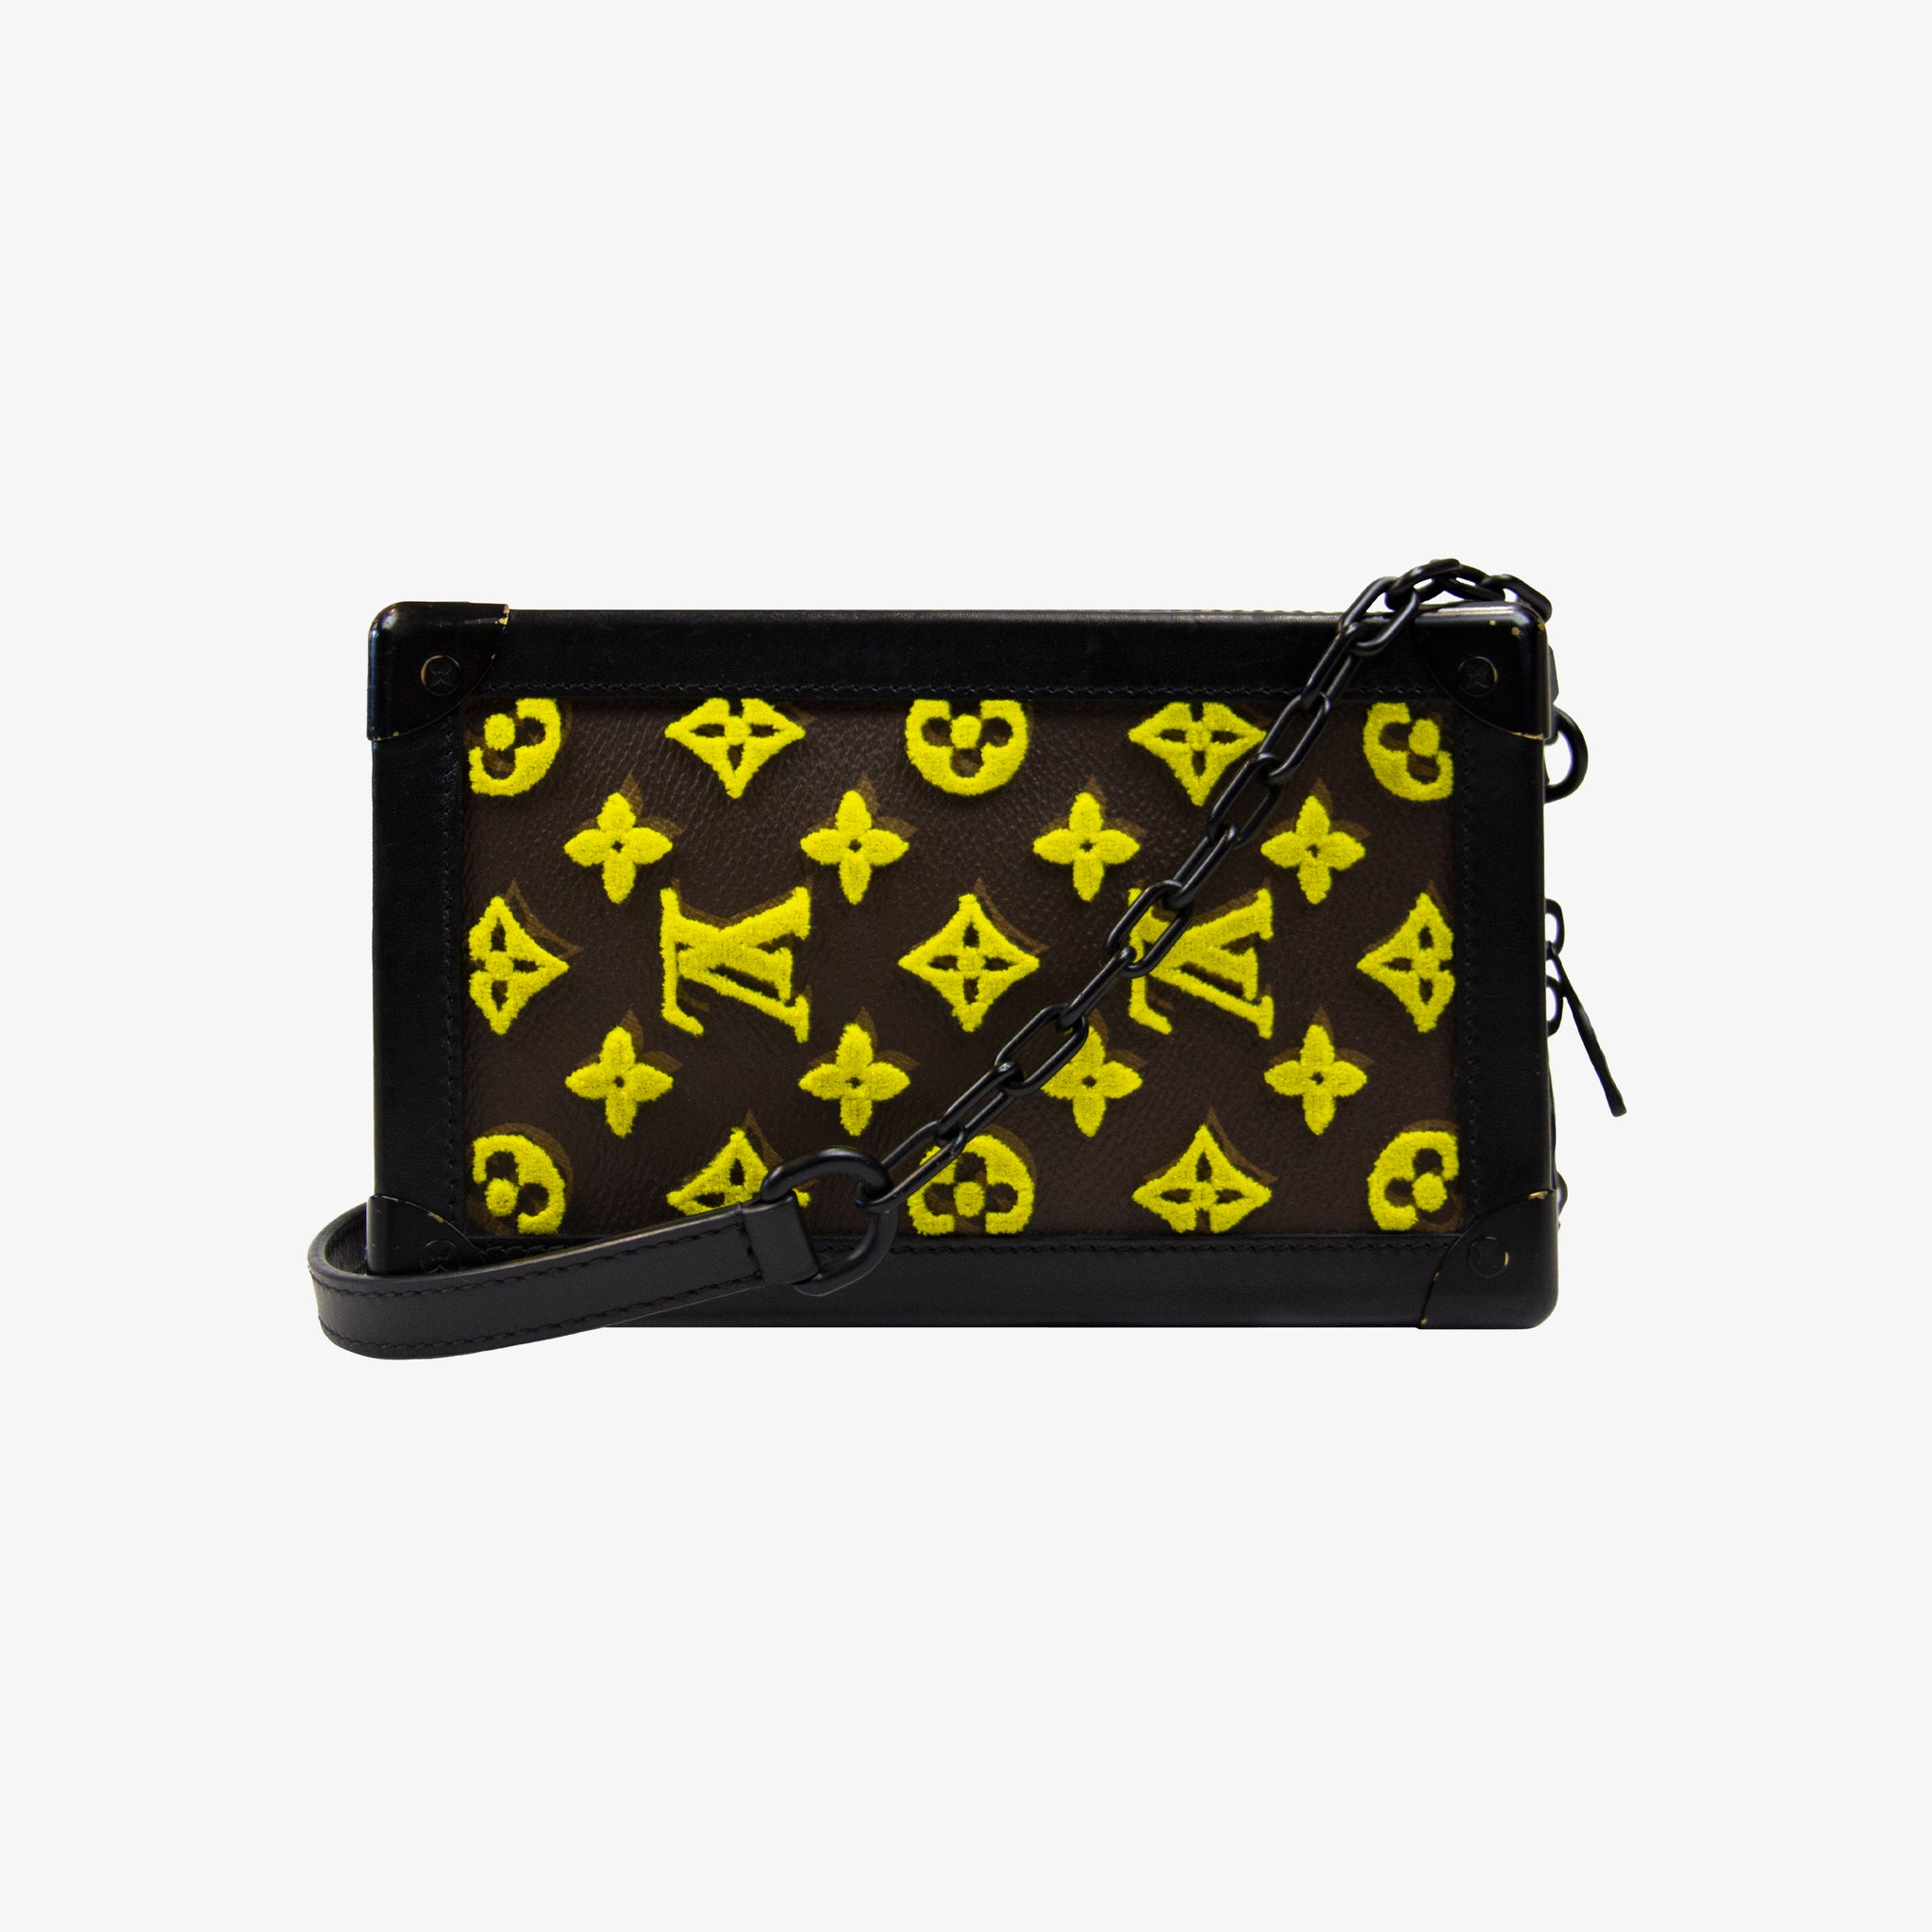 Louis Vuitton Vertical Soft Trunk Embroidered Handbag